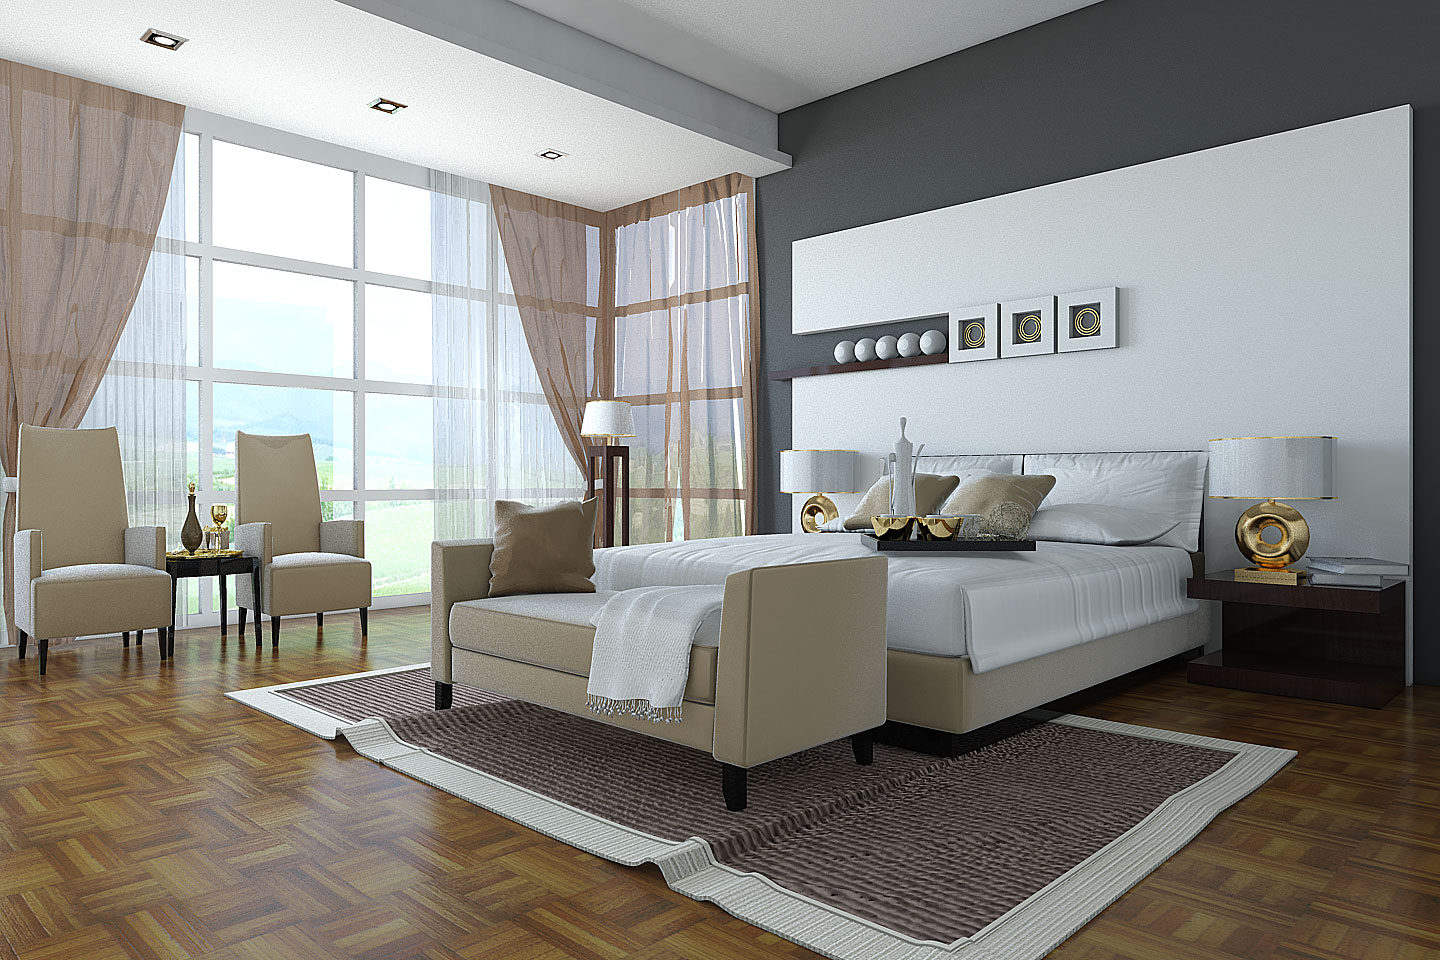 http://2.bp.blogspot.com/-a9a-LmoUT6Q/TqV2u53AyeI/AAAAAAAAAPM/QvNAlDjPdR0/s1600/classic-bedroom-design1.jpg